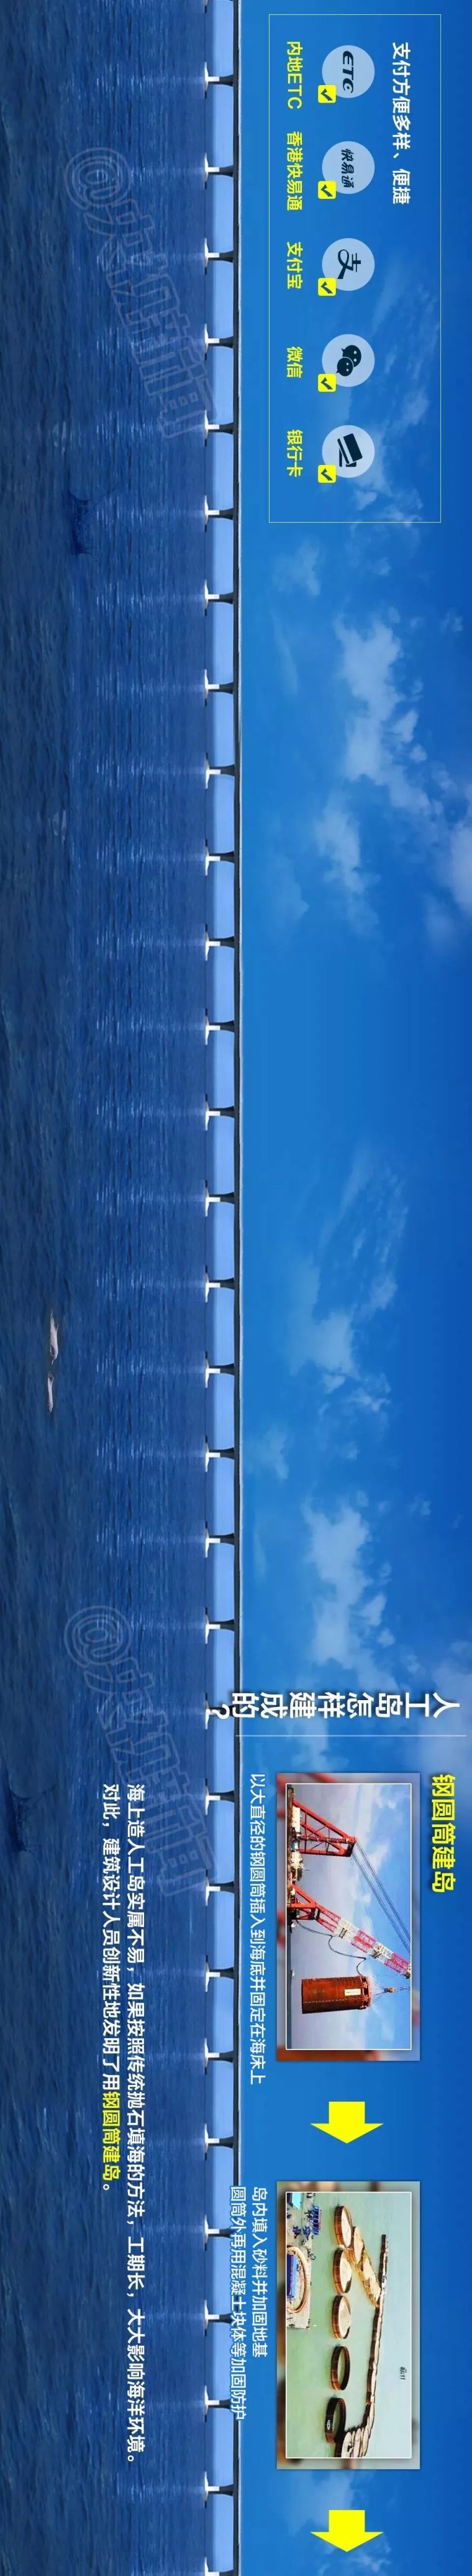 港珠澳大桥正式开通！意义特别重大！_27